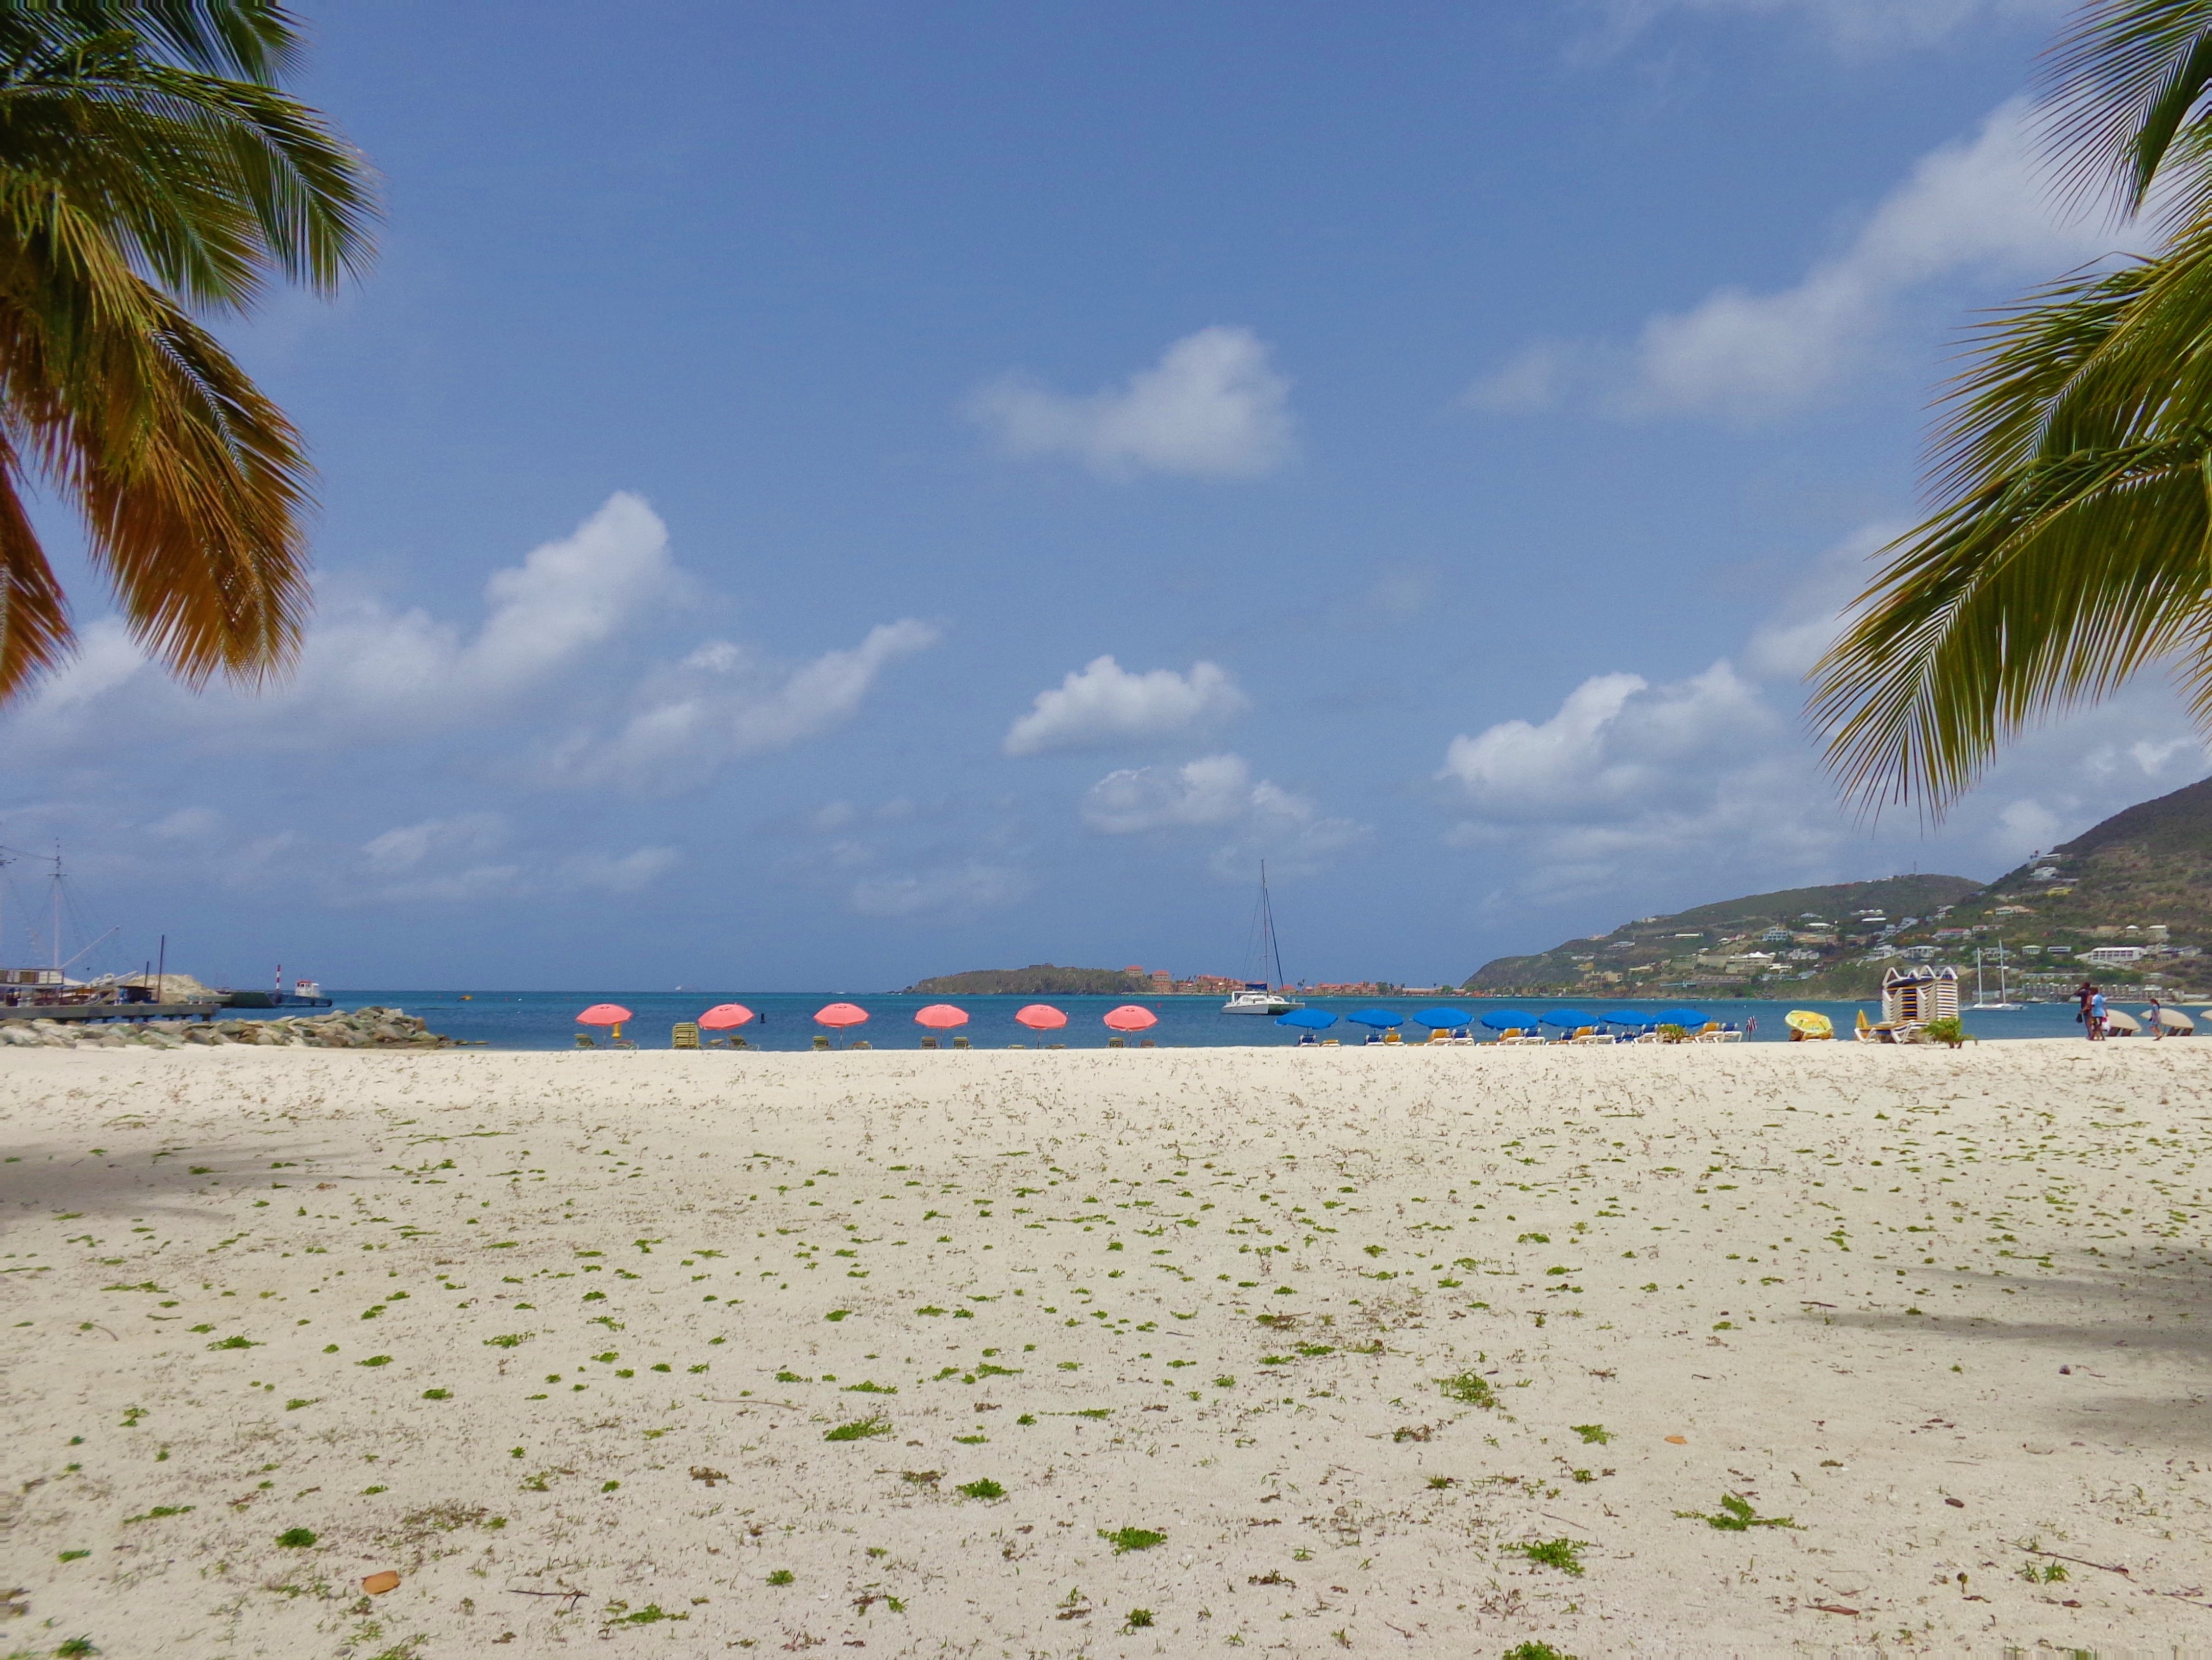 Beach in St Maarten